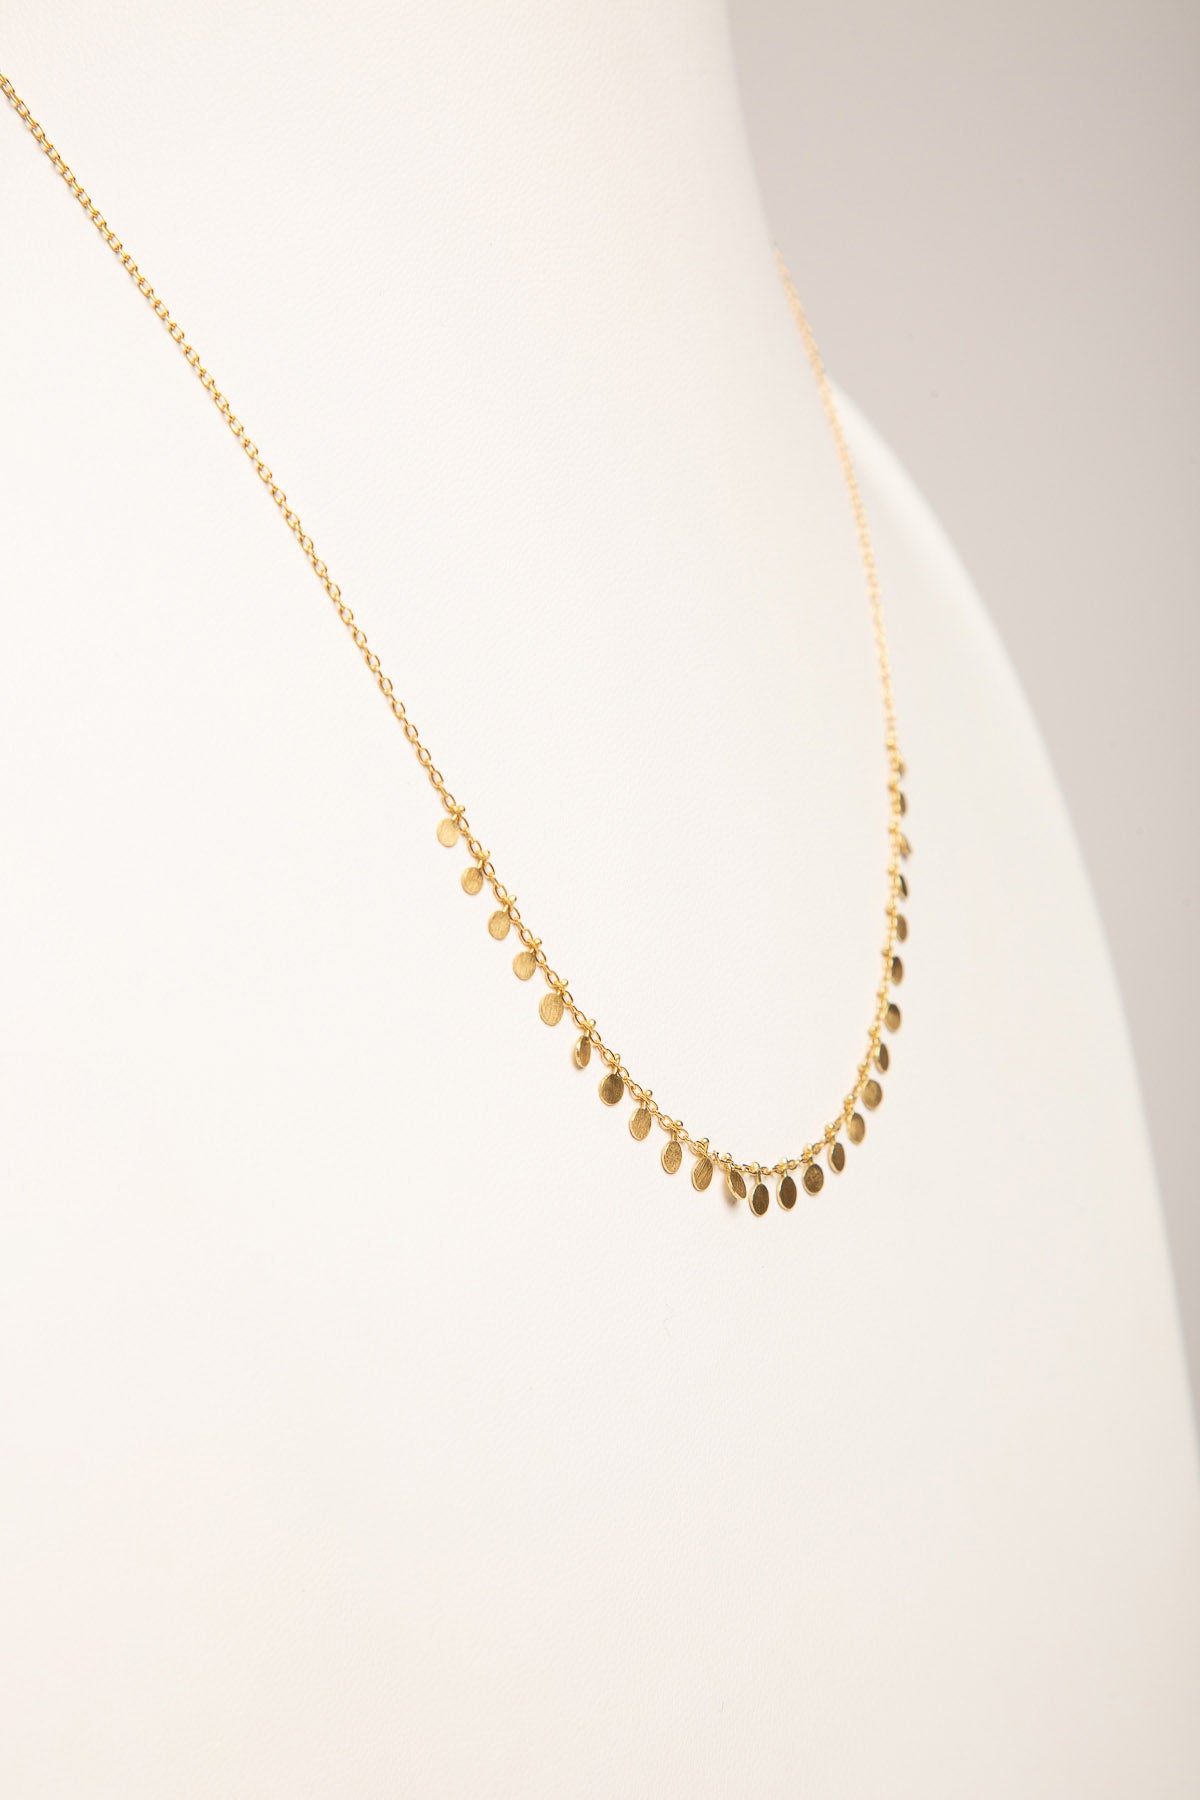 Tiny Dot Necklace | Evil eye necklace gold, Diamond choker necklace, Gold  fashion necklace